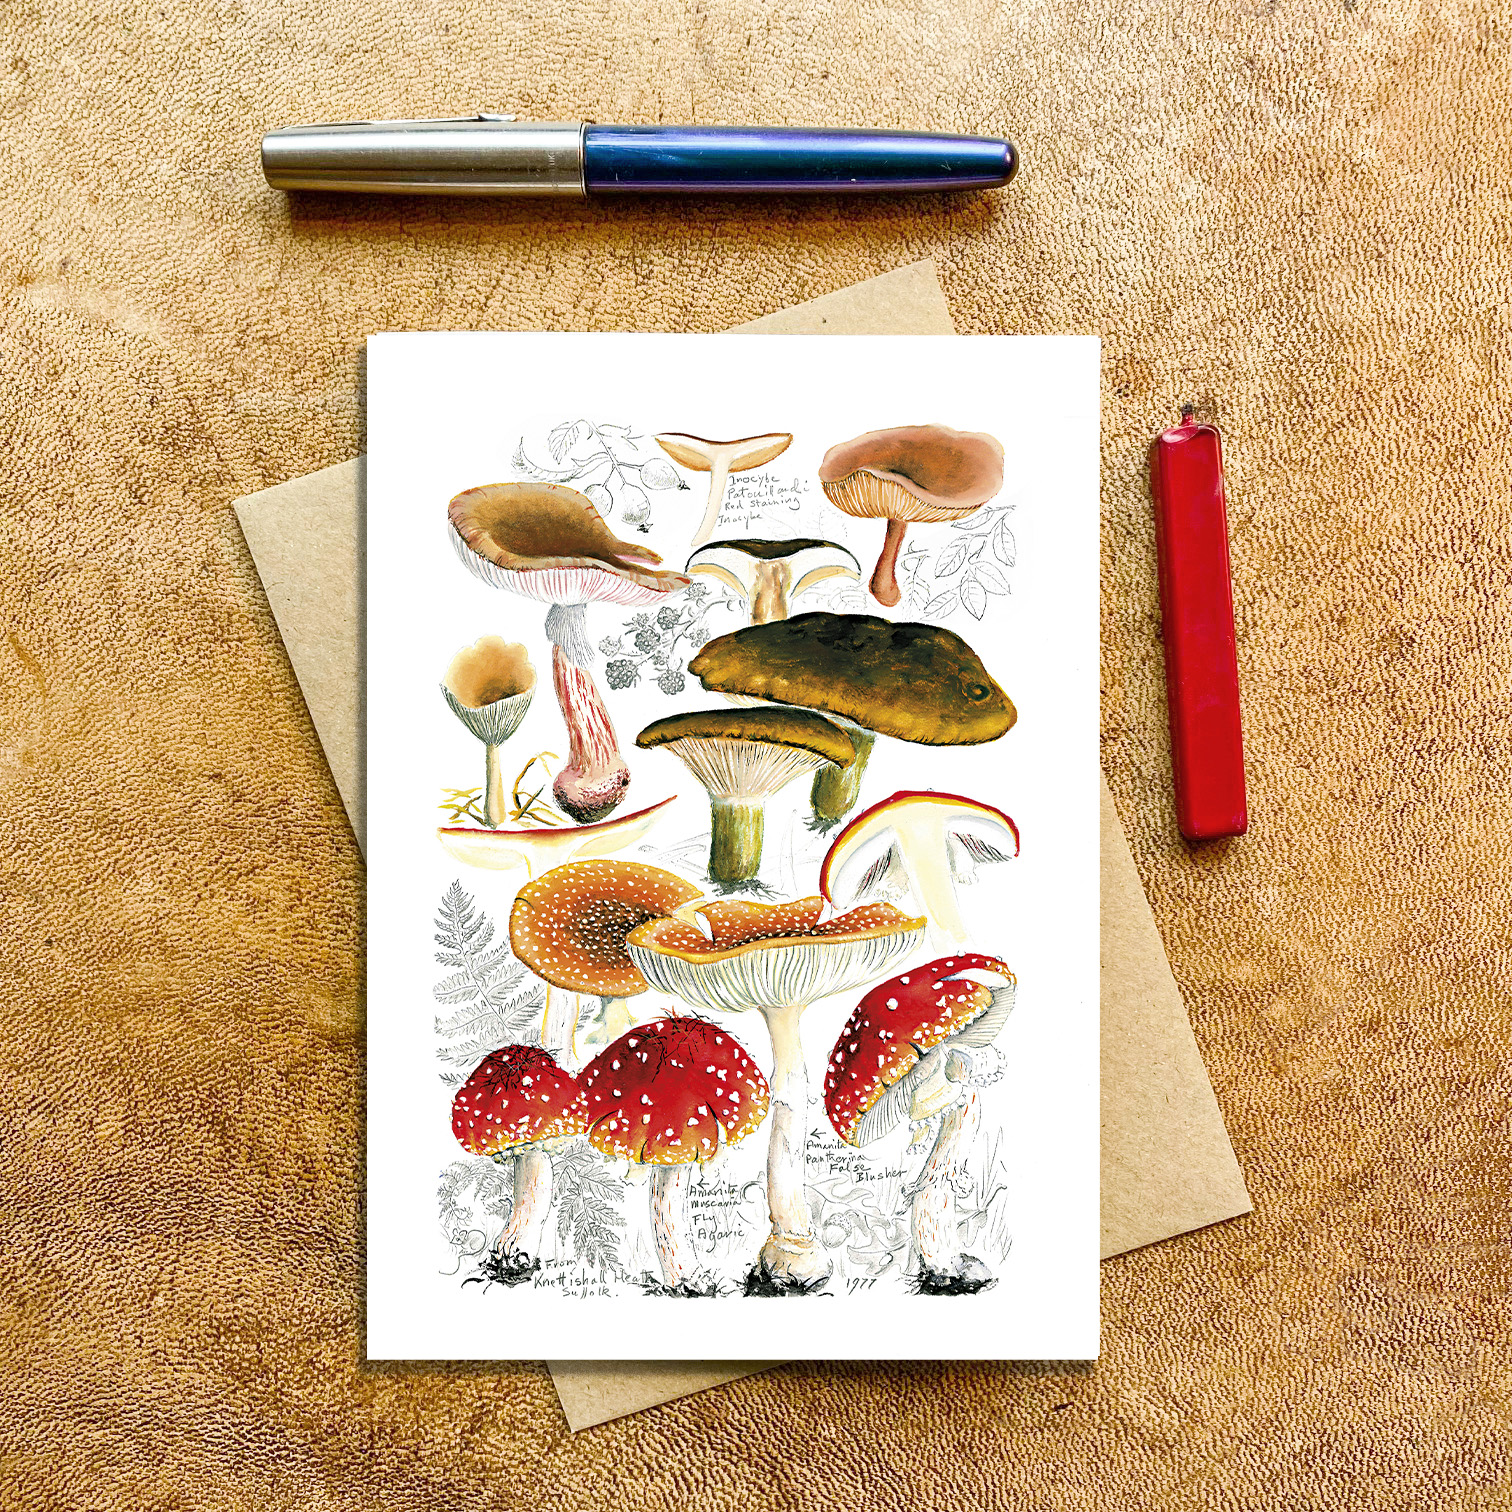 fungi mushrooms, Knettishal Heath